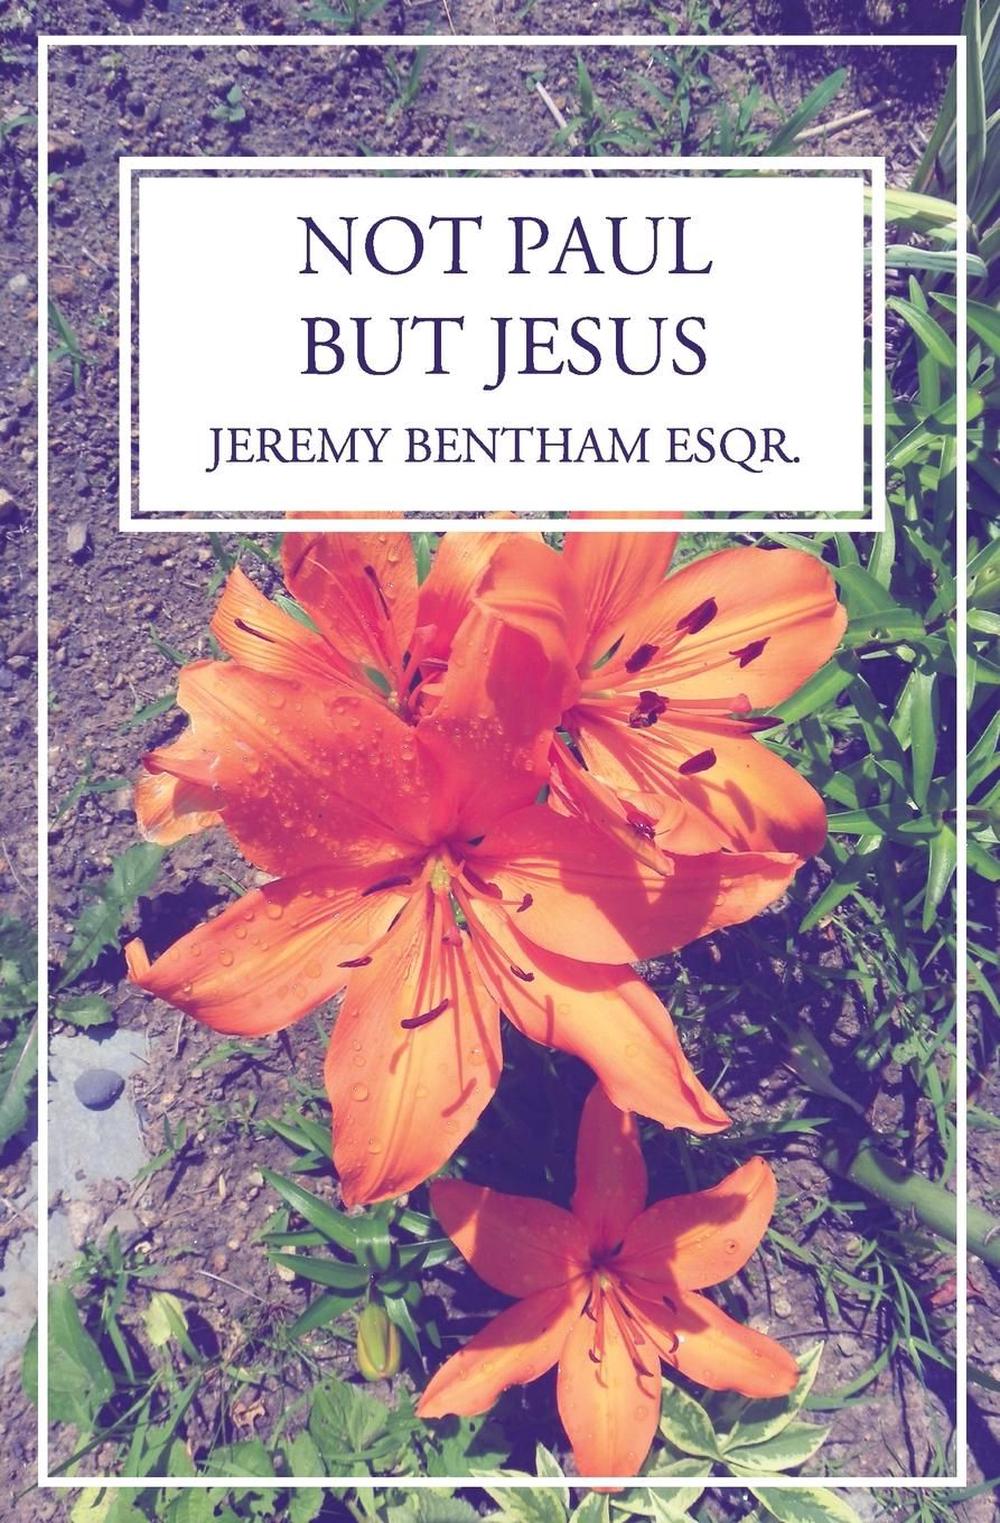 Not Paul, But Jesus by Jeremy Bentham